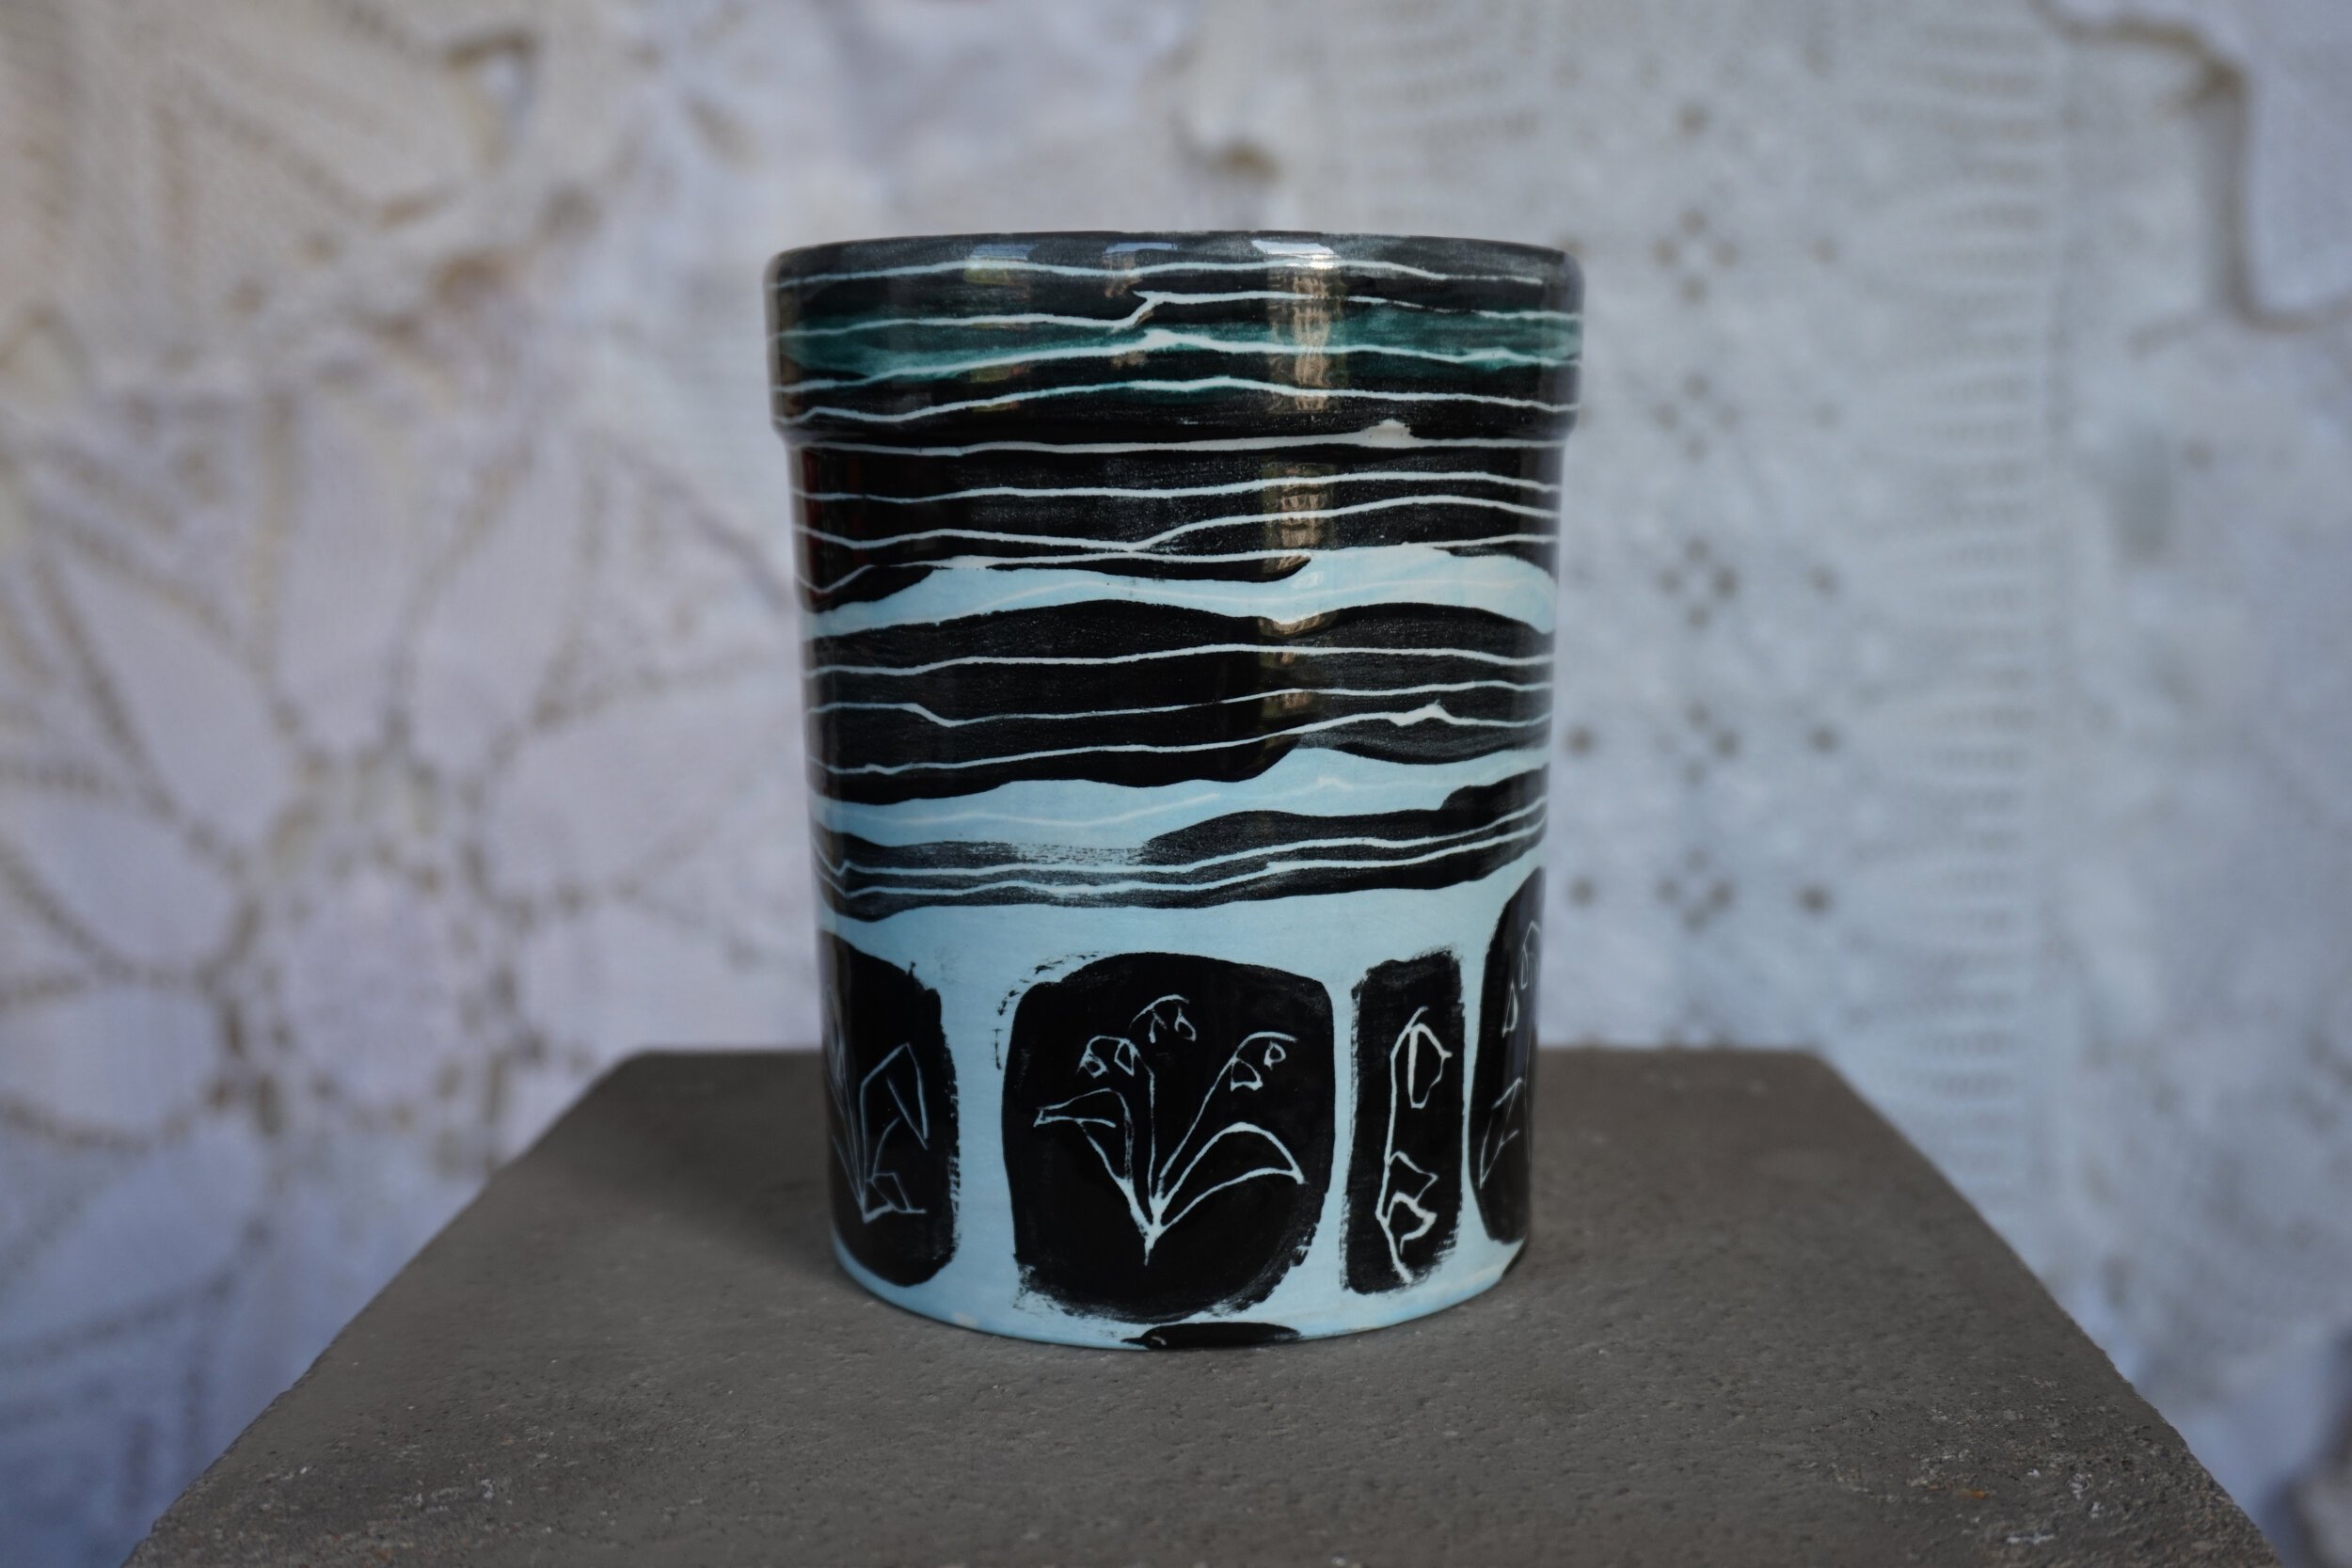   Vase, 2021   Porcelain  4 x 5 in 